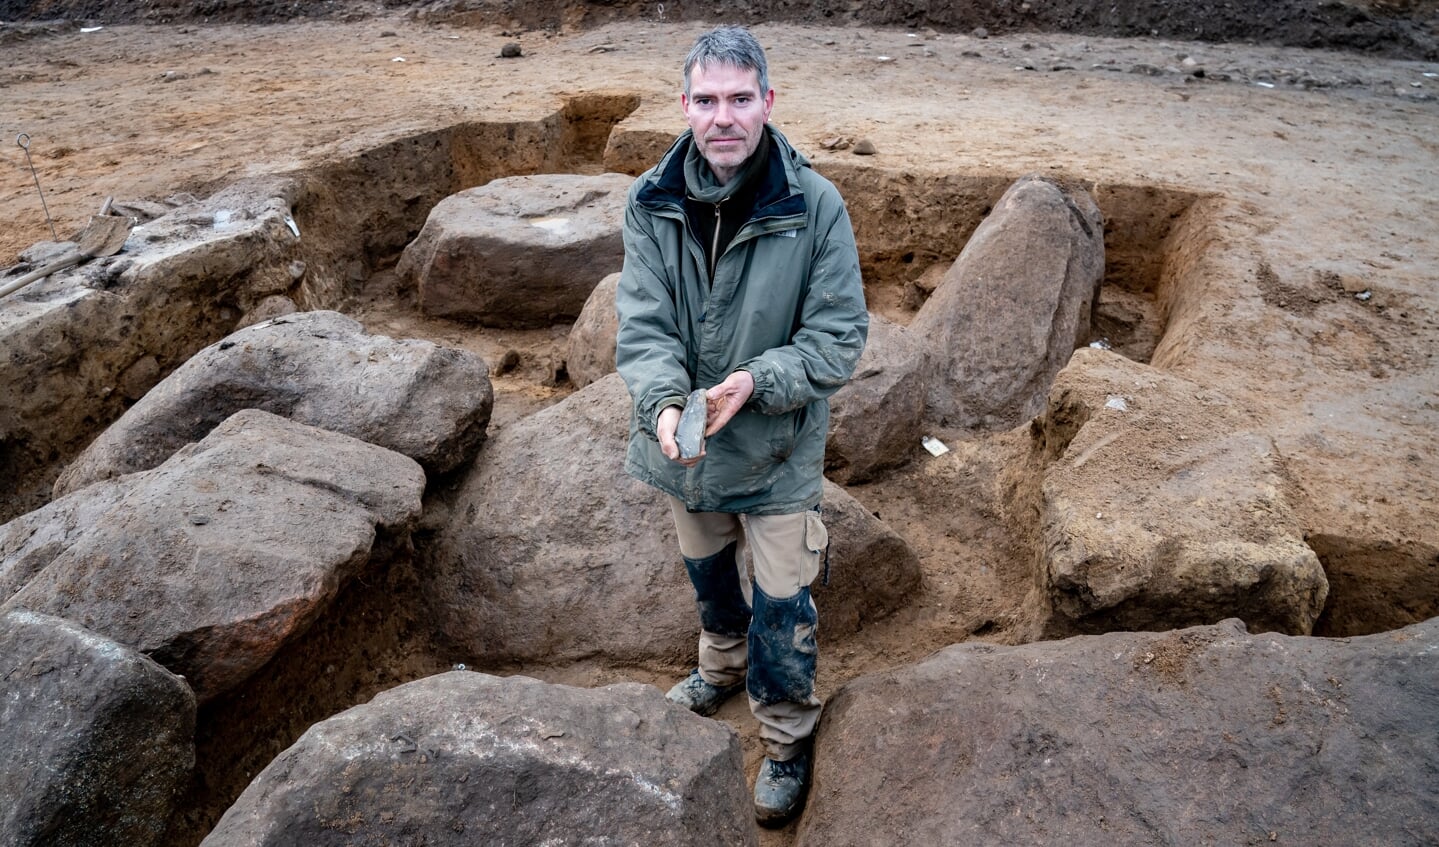 Ringo Klooß, Grabungsleiter, zeigt in der Ausgrabungsstelle eines Großsteingrabes aus der Trichterbecherzeit ein darin gefundenes Feuersteinbeil. Das auf einem schleswig-holsteinischen Acker gefundene Grab ist circa 5000 Jahre alt. Foto: 